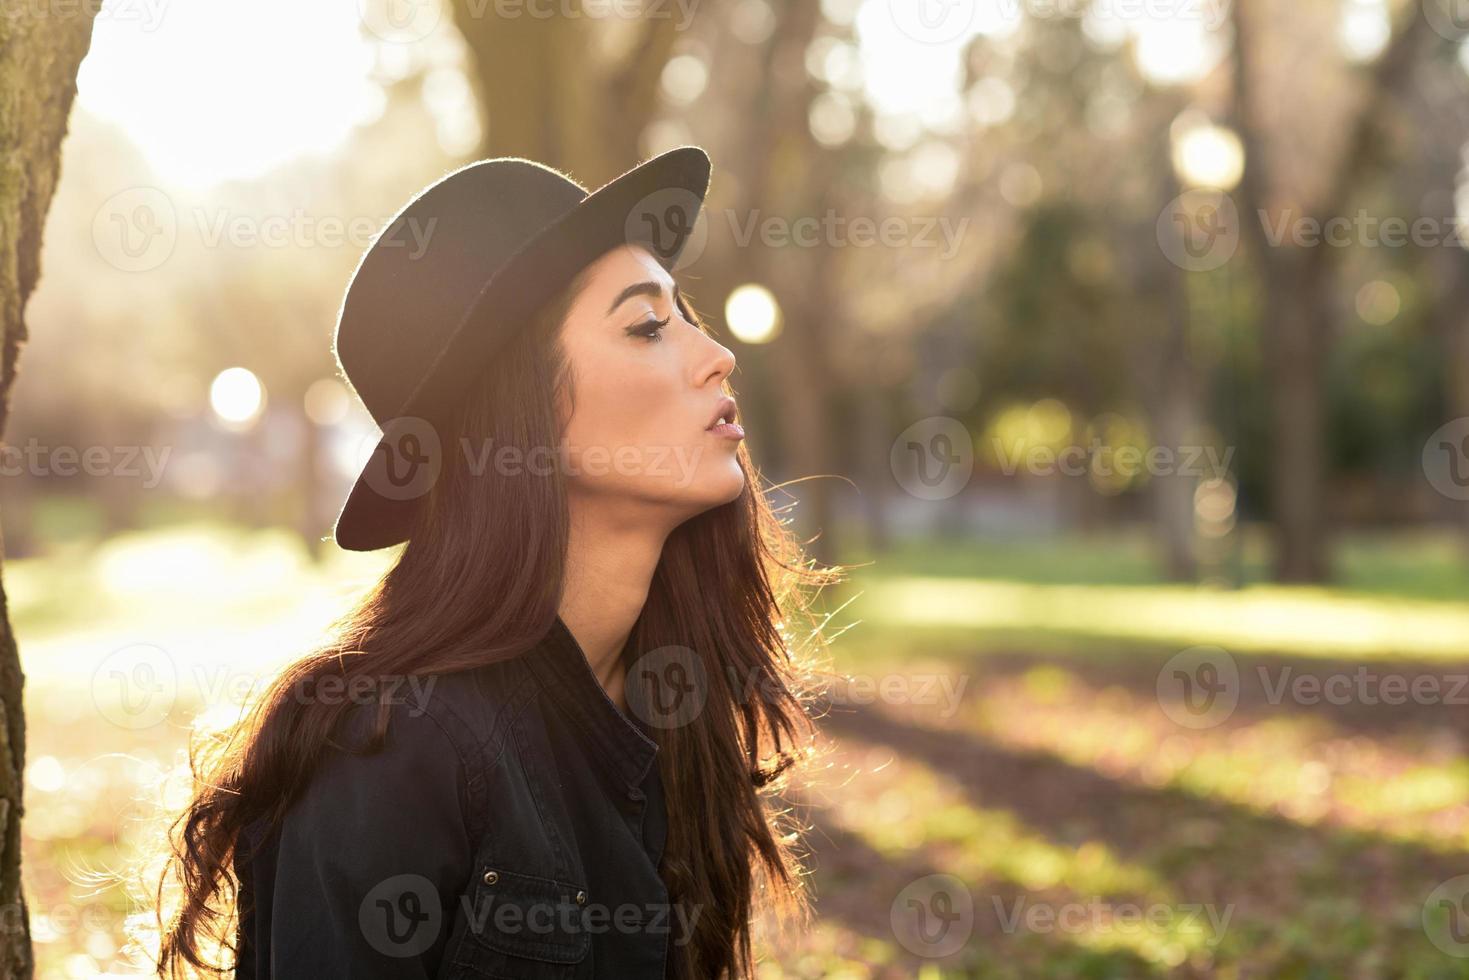 mulher pensativa sentada sozinha ao ar livre com chapéu foto